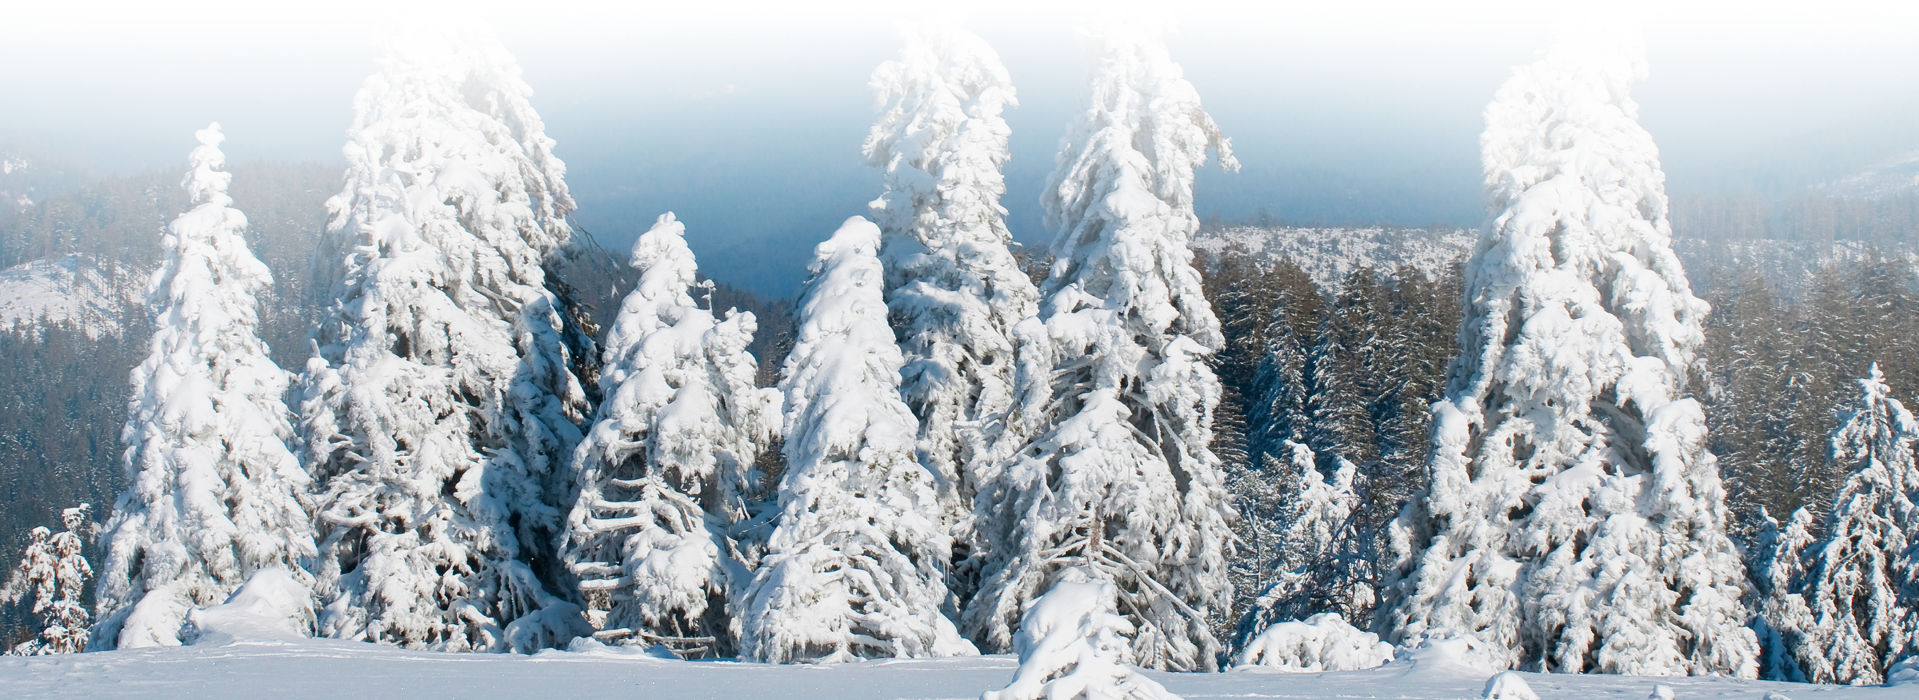 Aus einer geschlossenen Schneedecke, die sehr dick zu sein scheint, ragen ein paar verschneite Nadelbäume empor. Sie tragen auch große Schneelast und biegen sich unter dem Gewicht. Der Himmel darüber ist blau - hinter den Bäumen geht es in ein weites, tiefes Tal, der Horizont ist kaum erkennbar.